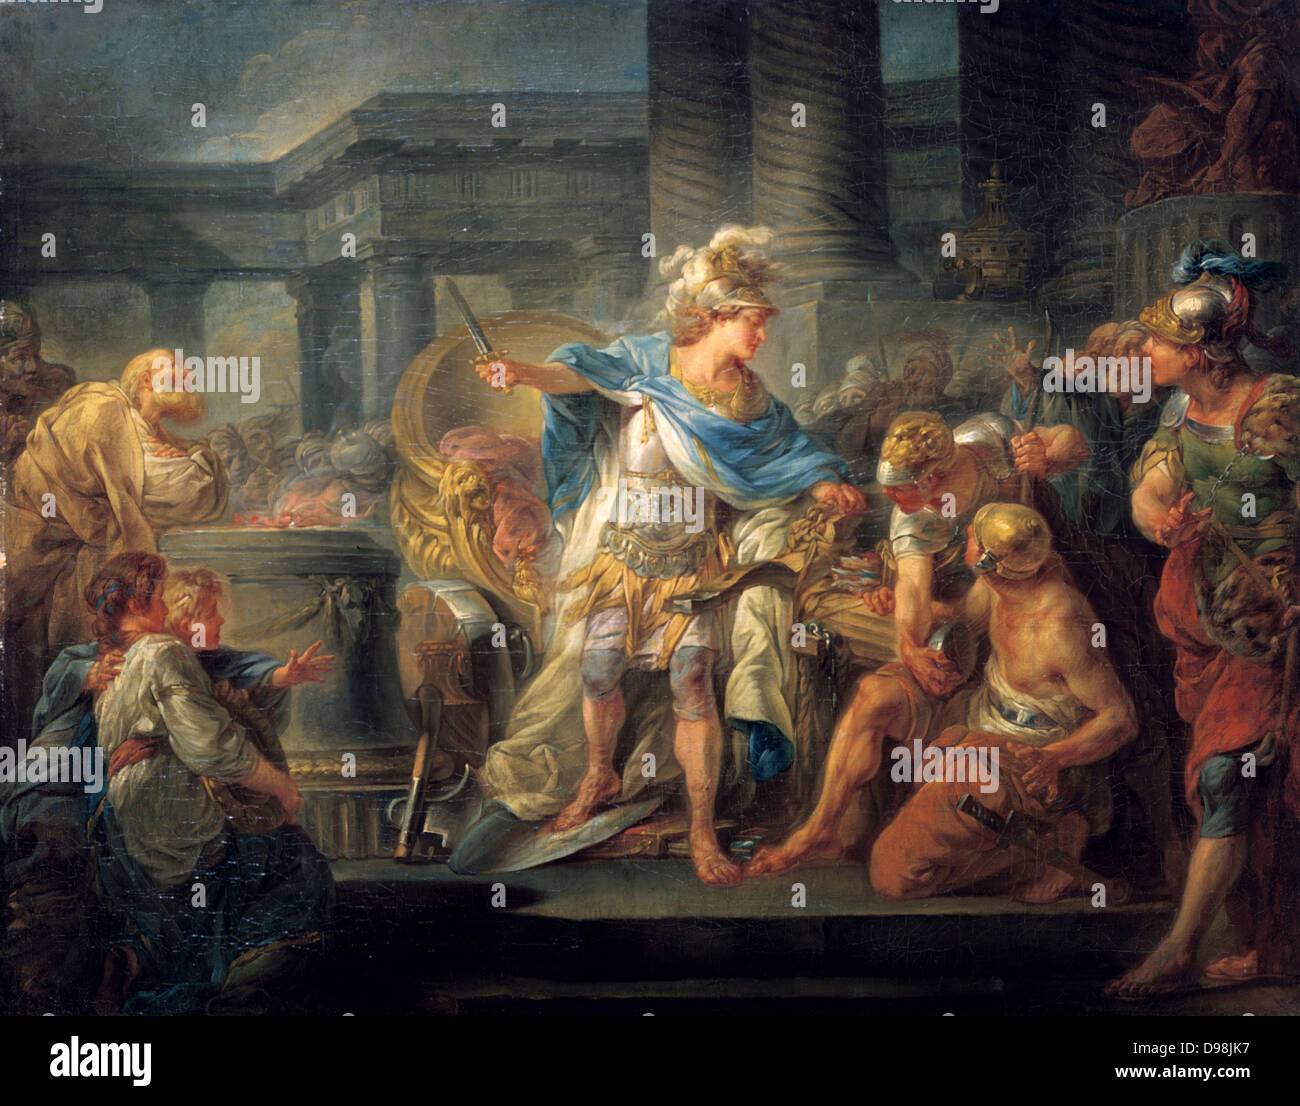 Alexandre coupant le Nœud gordien" huile sur toile. Jean-Simon Berthelemy  (1743-1811) Peintre d'histoire français. Légende est, en 333 av. J.-C. À  Gordion, Phrygie, Alexandre le Grand, incapable de défaire le nœud, en